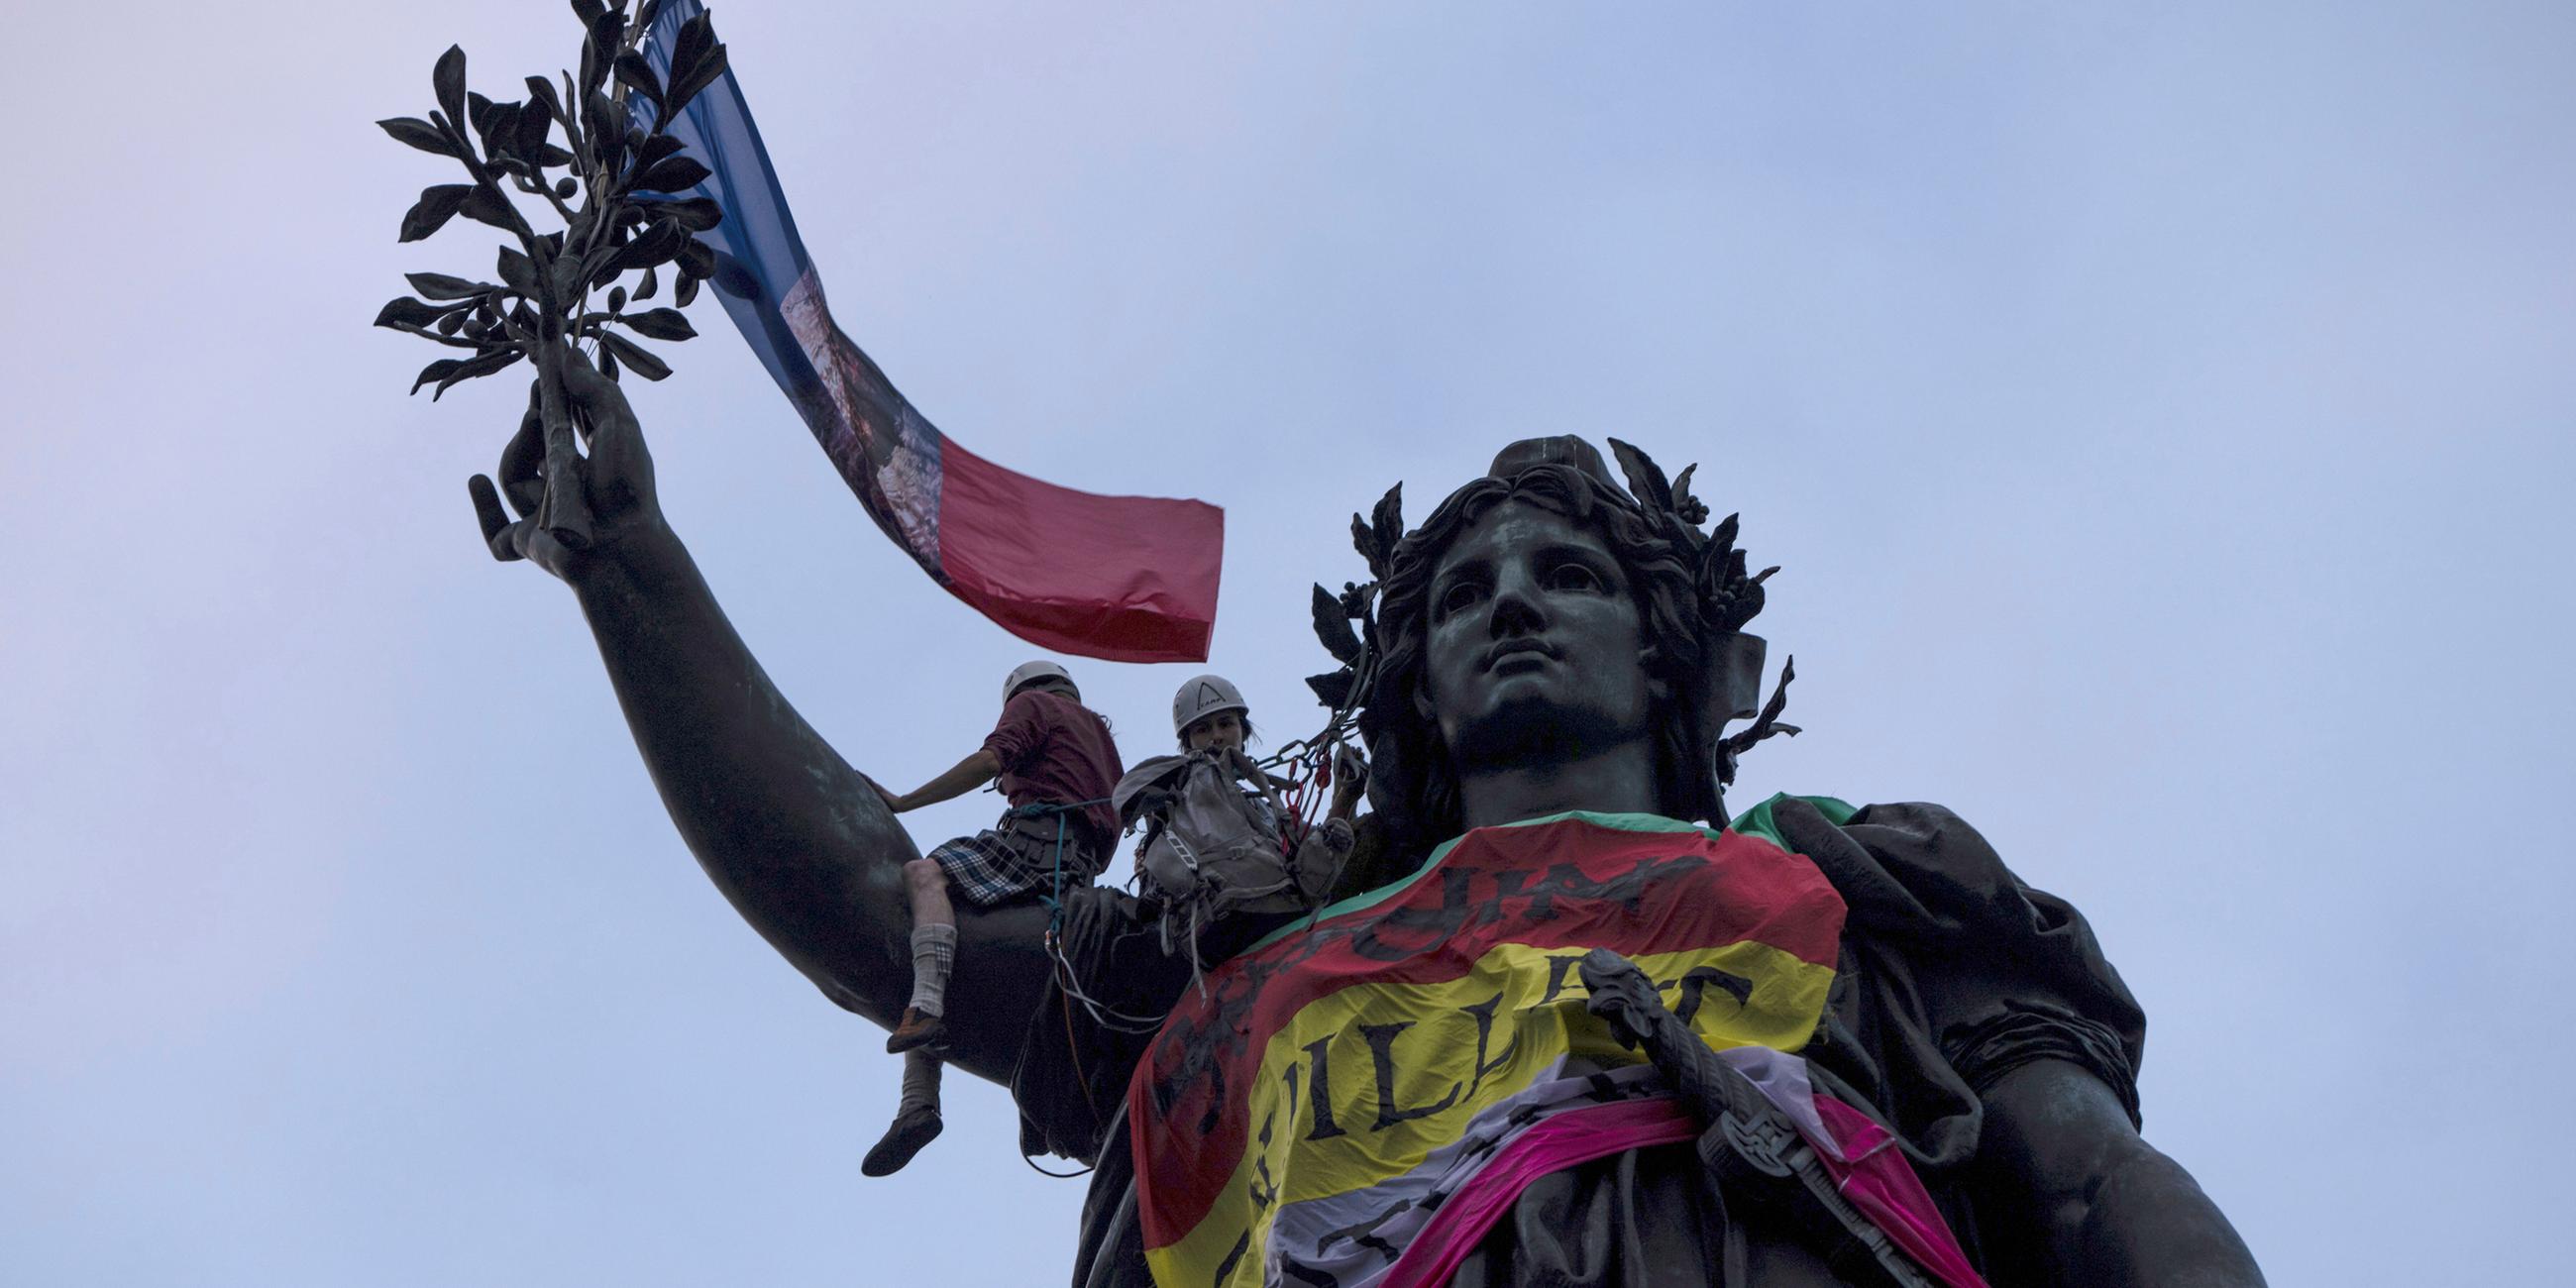 Frankreich, Paris: Auf dem mit Fahnen geschmückten Platz der Republik versammeln Menschen, um gegen Rechts zu protestieren.